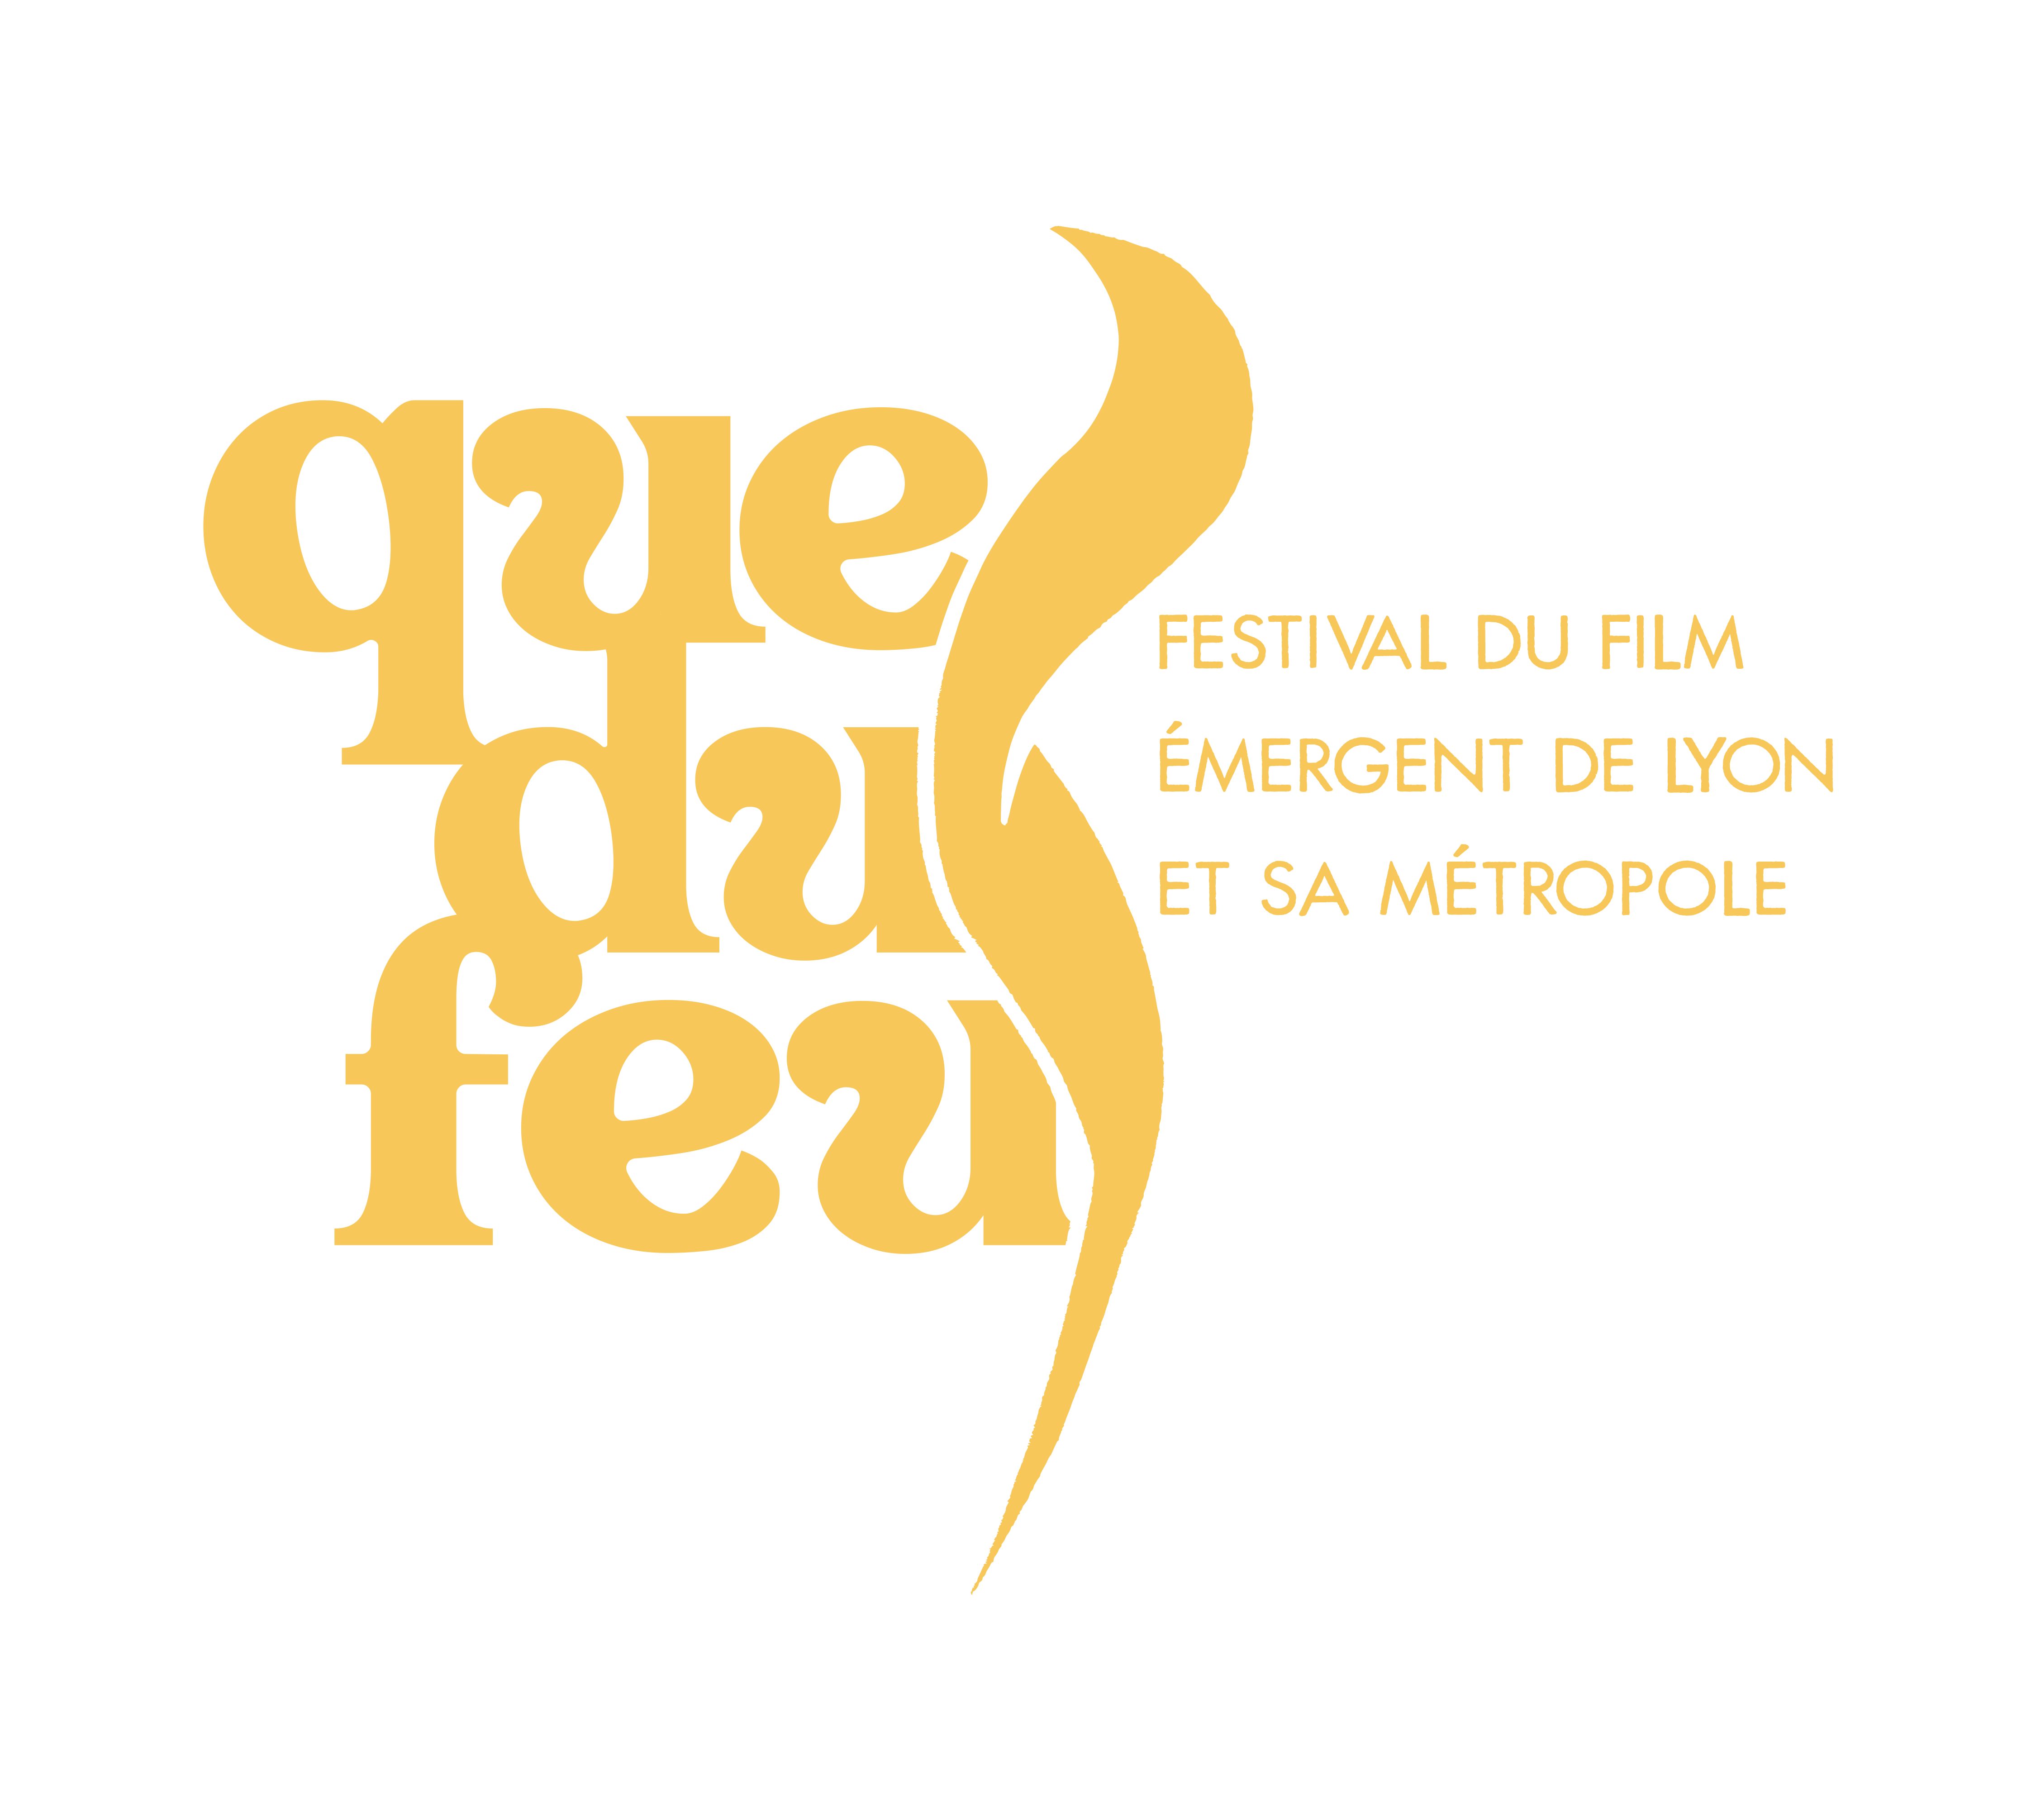 Logo festival